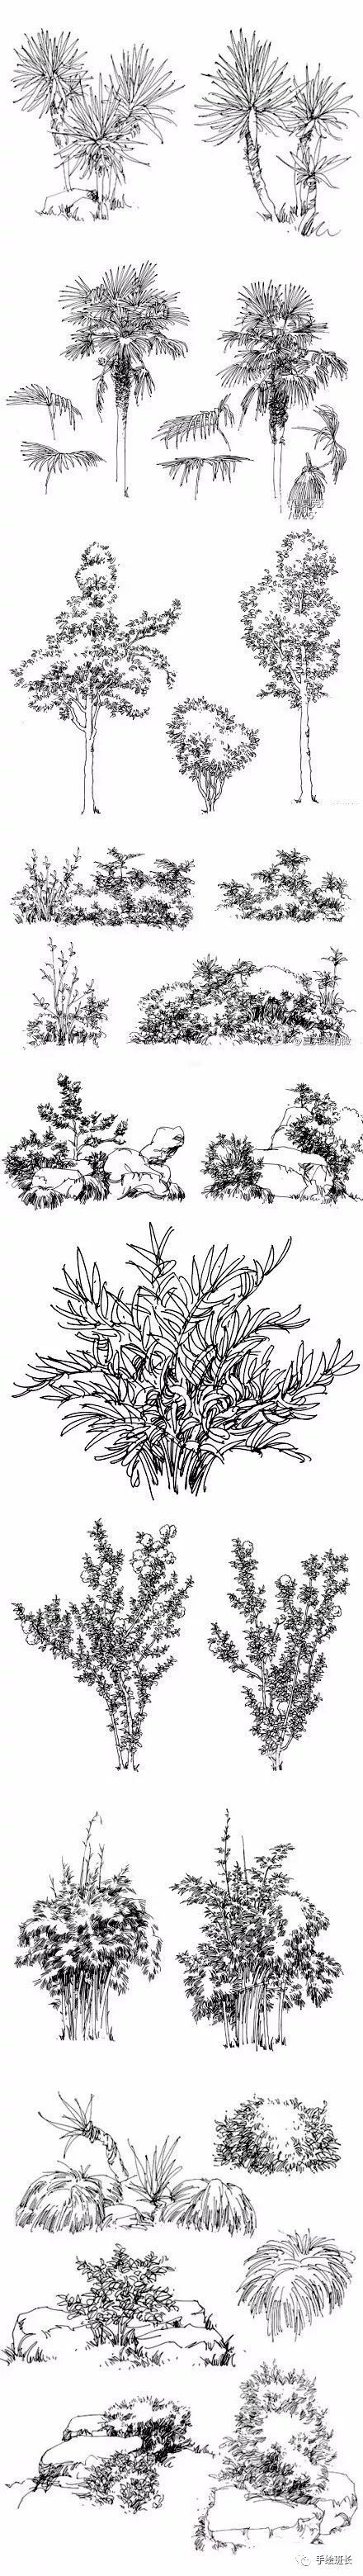 手绘资源夏克梁老师的经典植物手绘